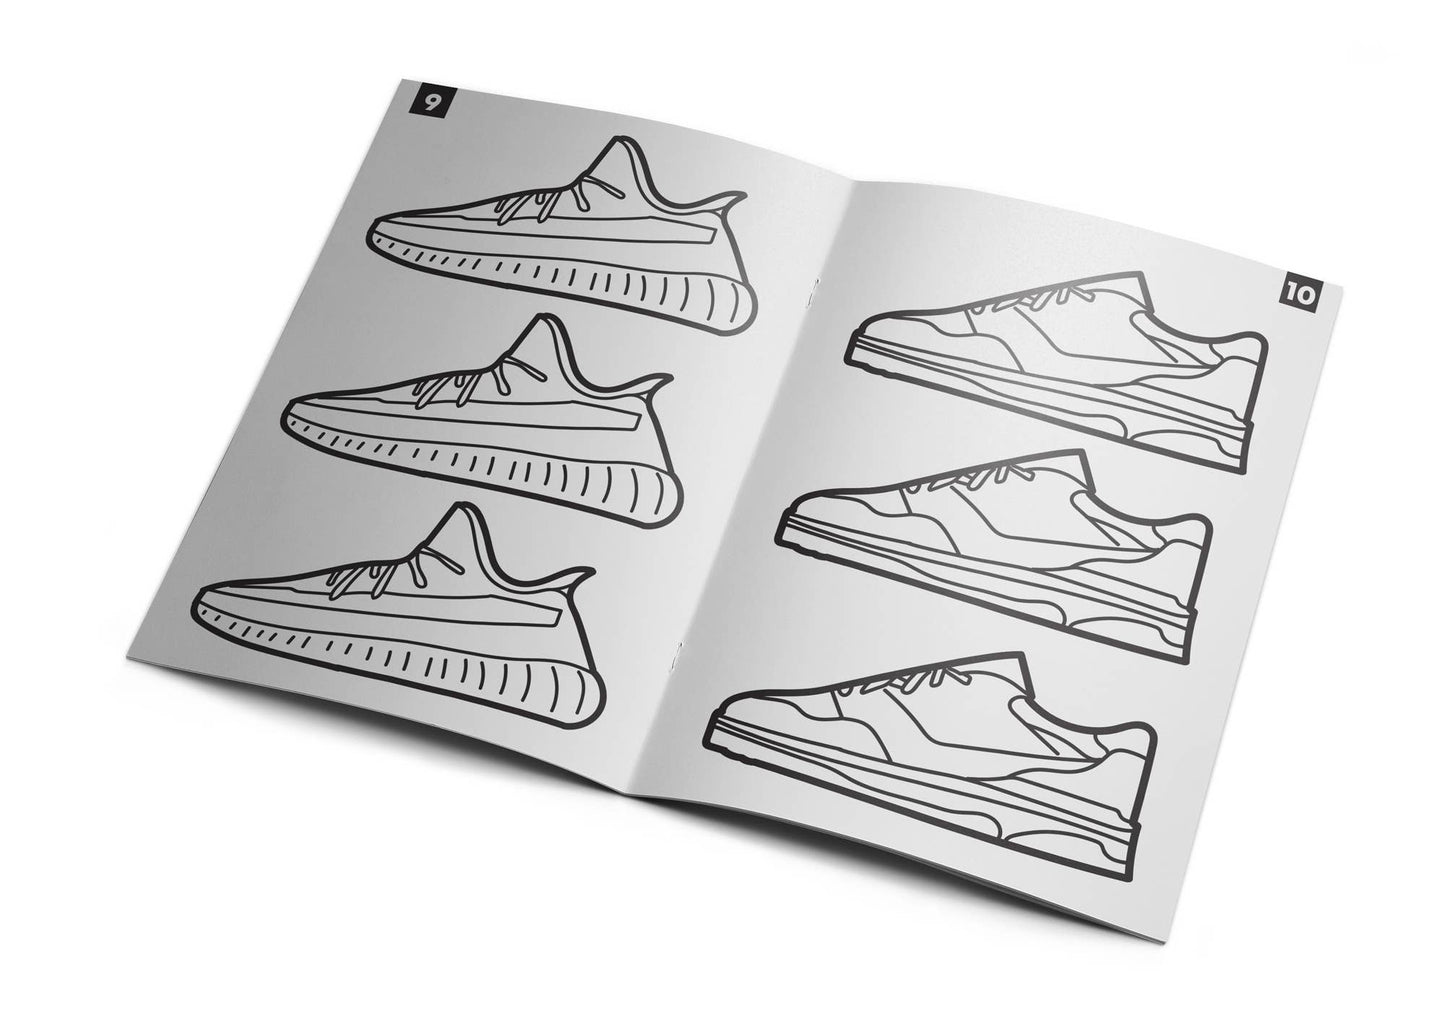 Sneaker Activity Book